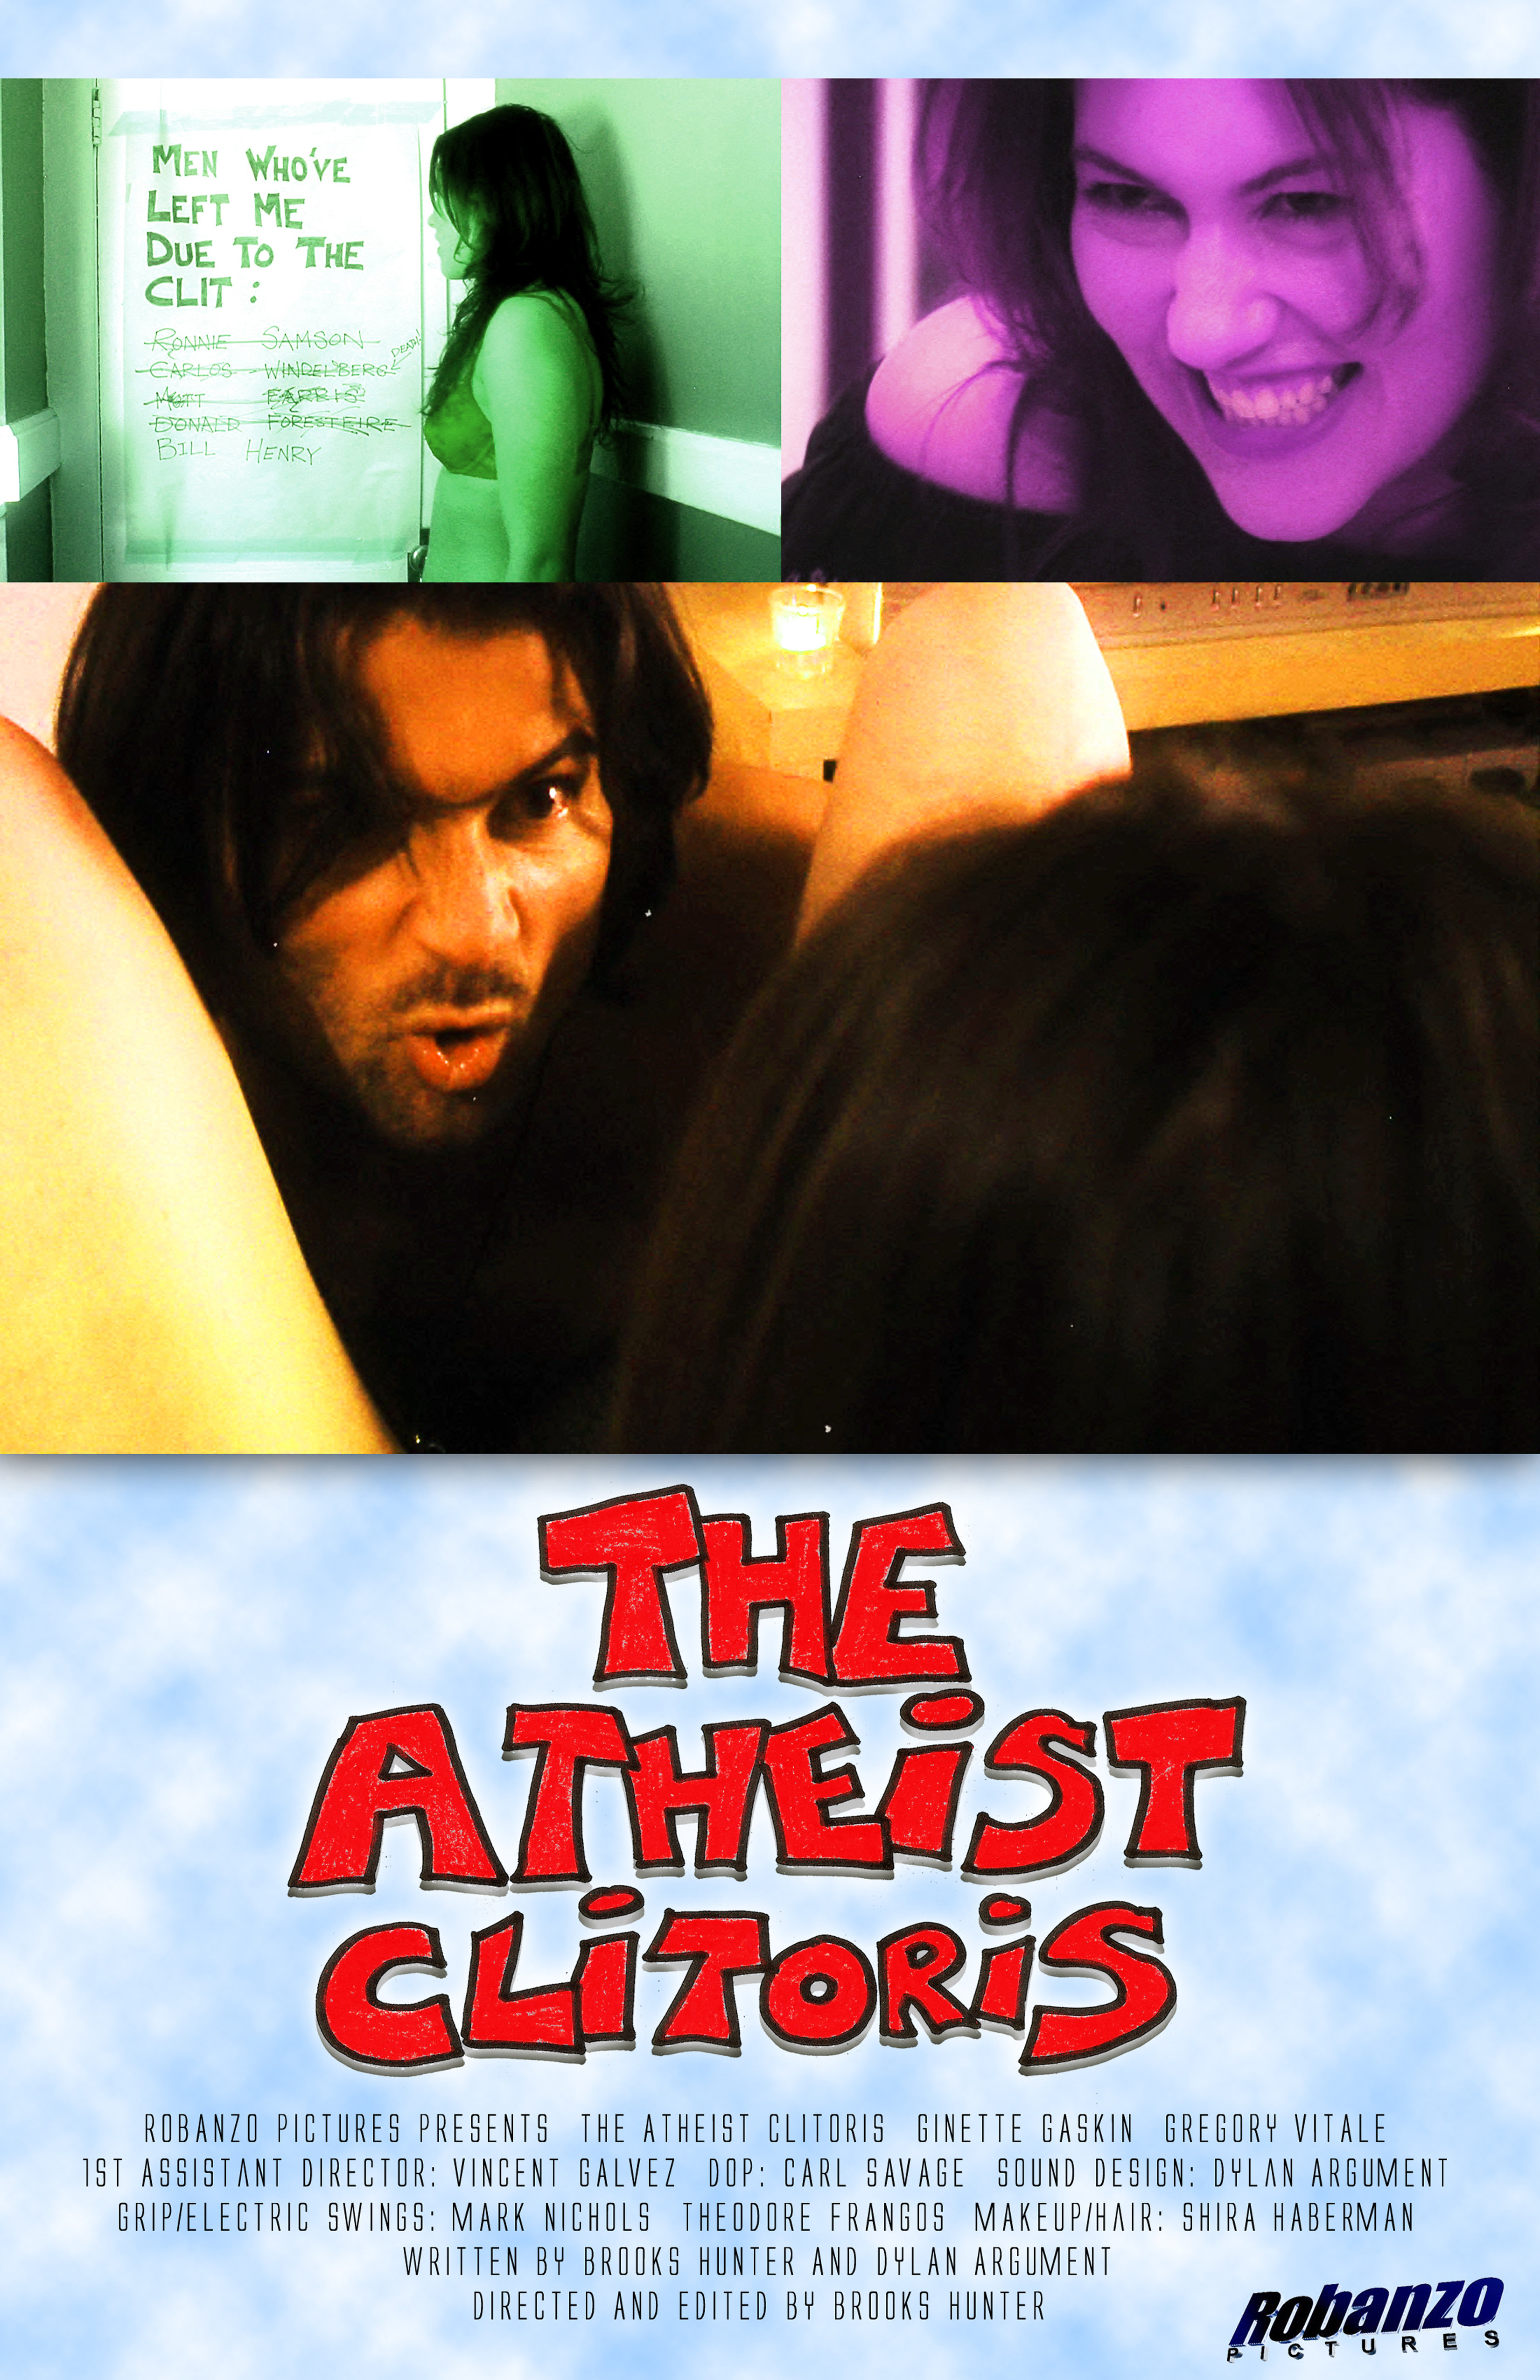 The Atheist Clitoris